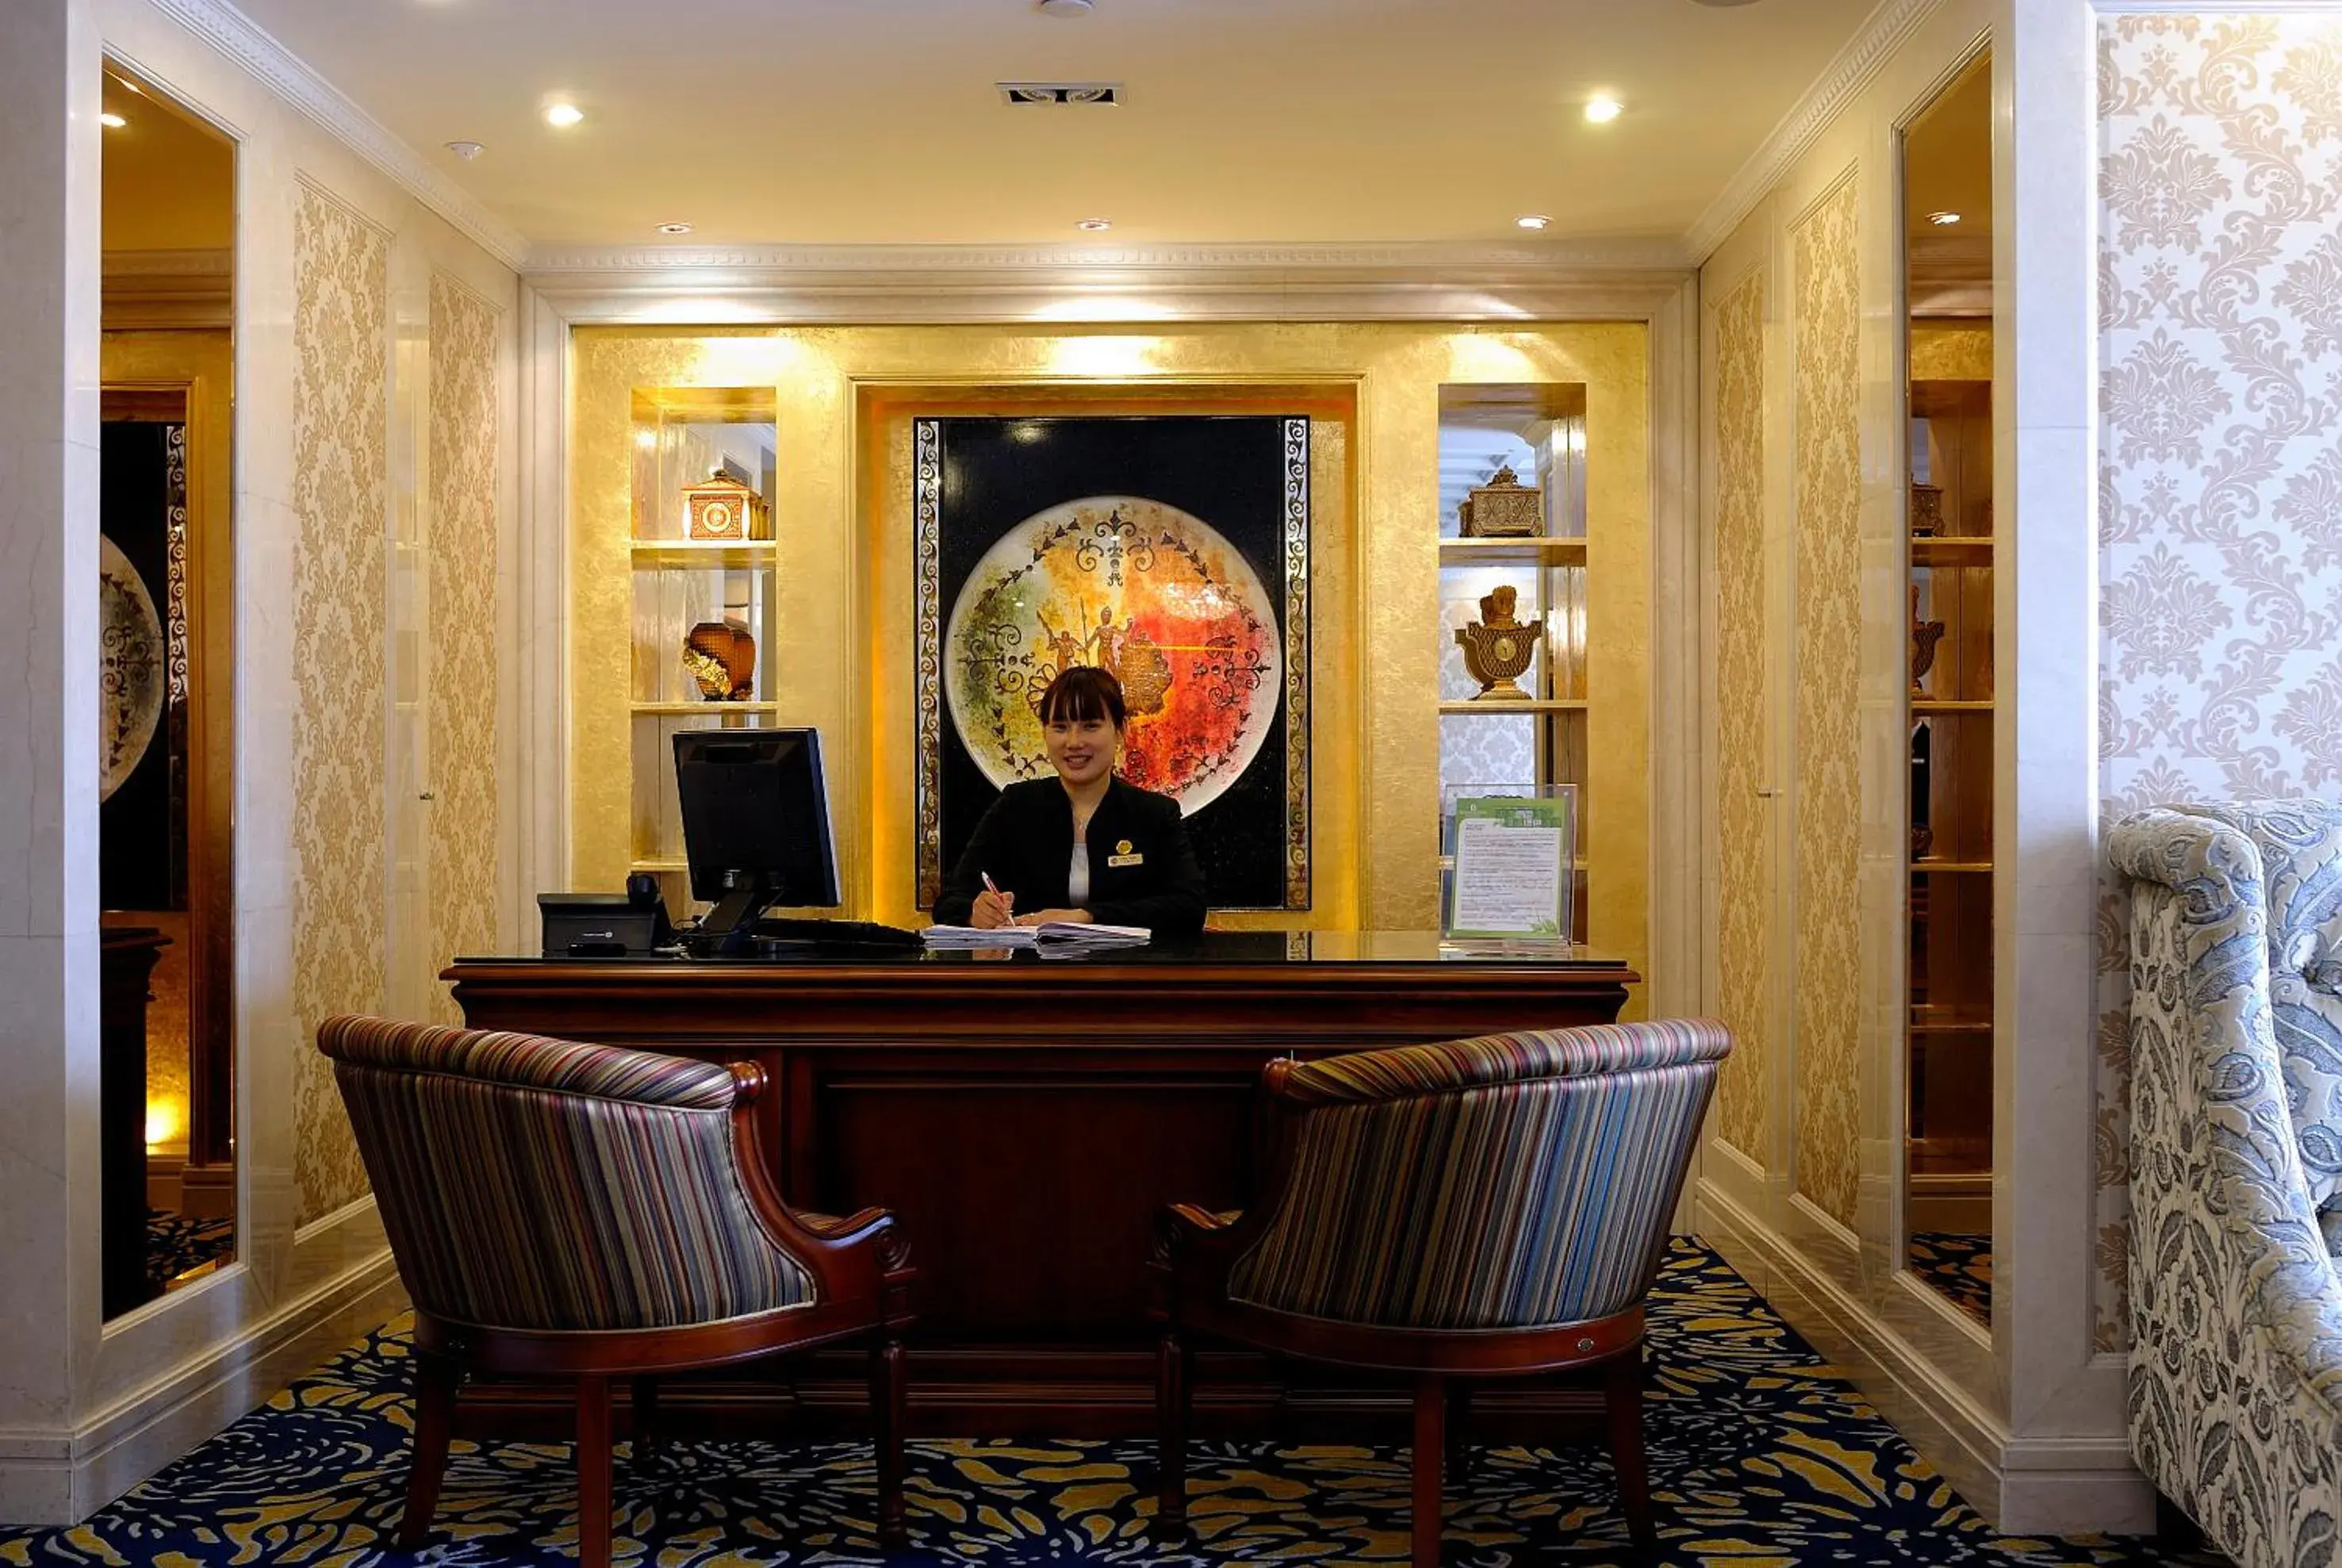 Lobby or reception, Lobby/Reception in Merry Hotel Shanghai